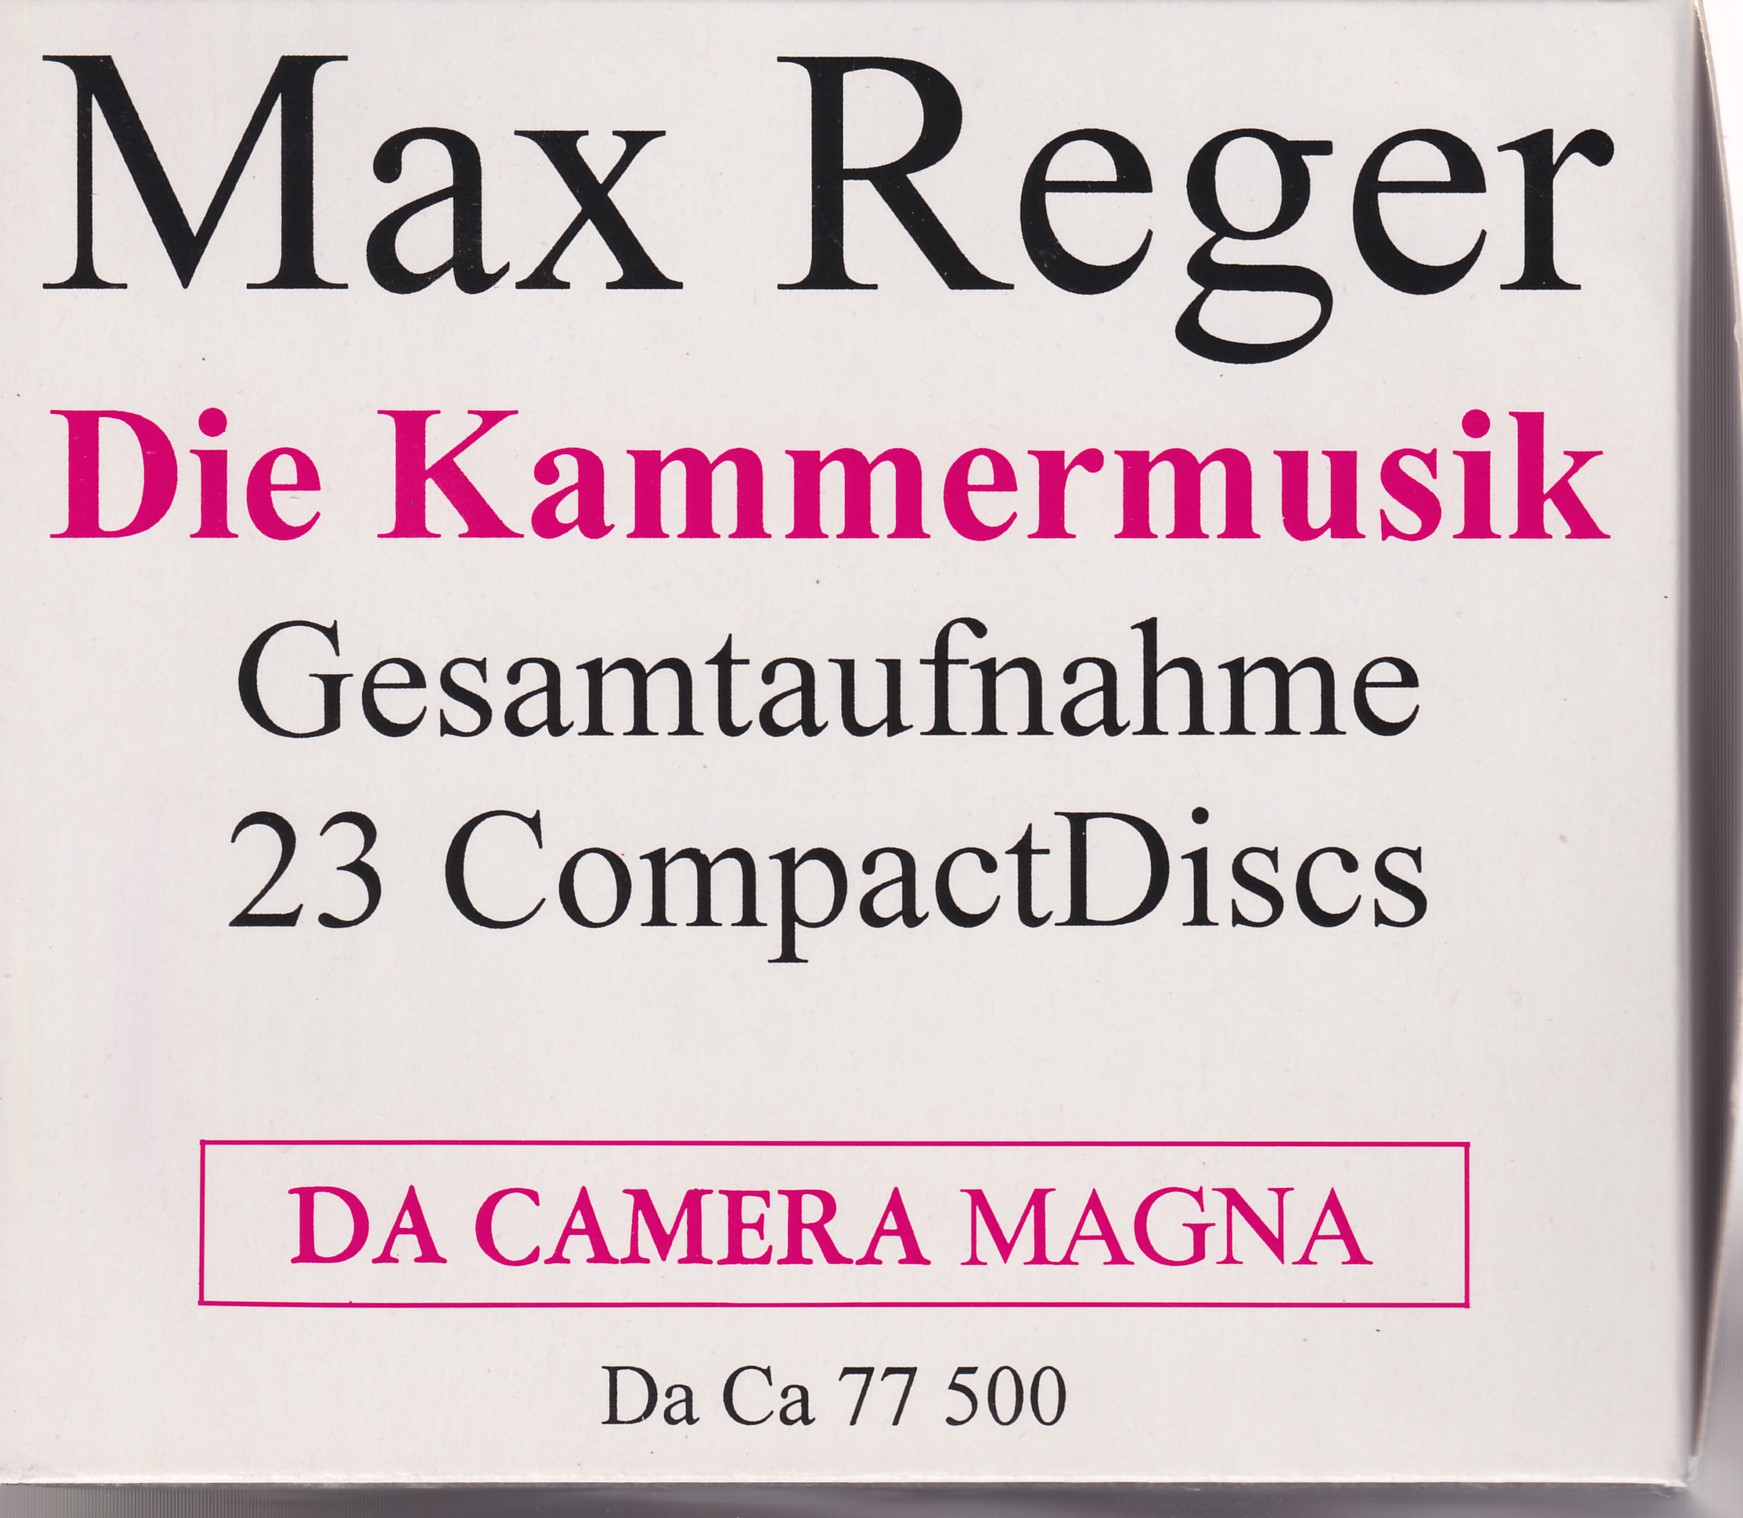 Max Reger - Kammermusik Box